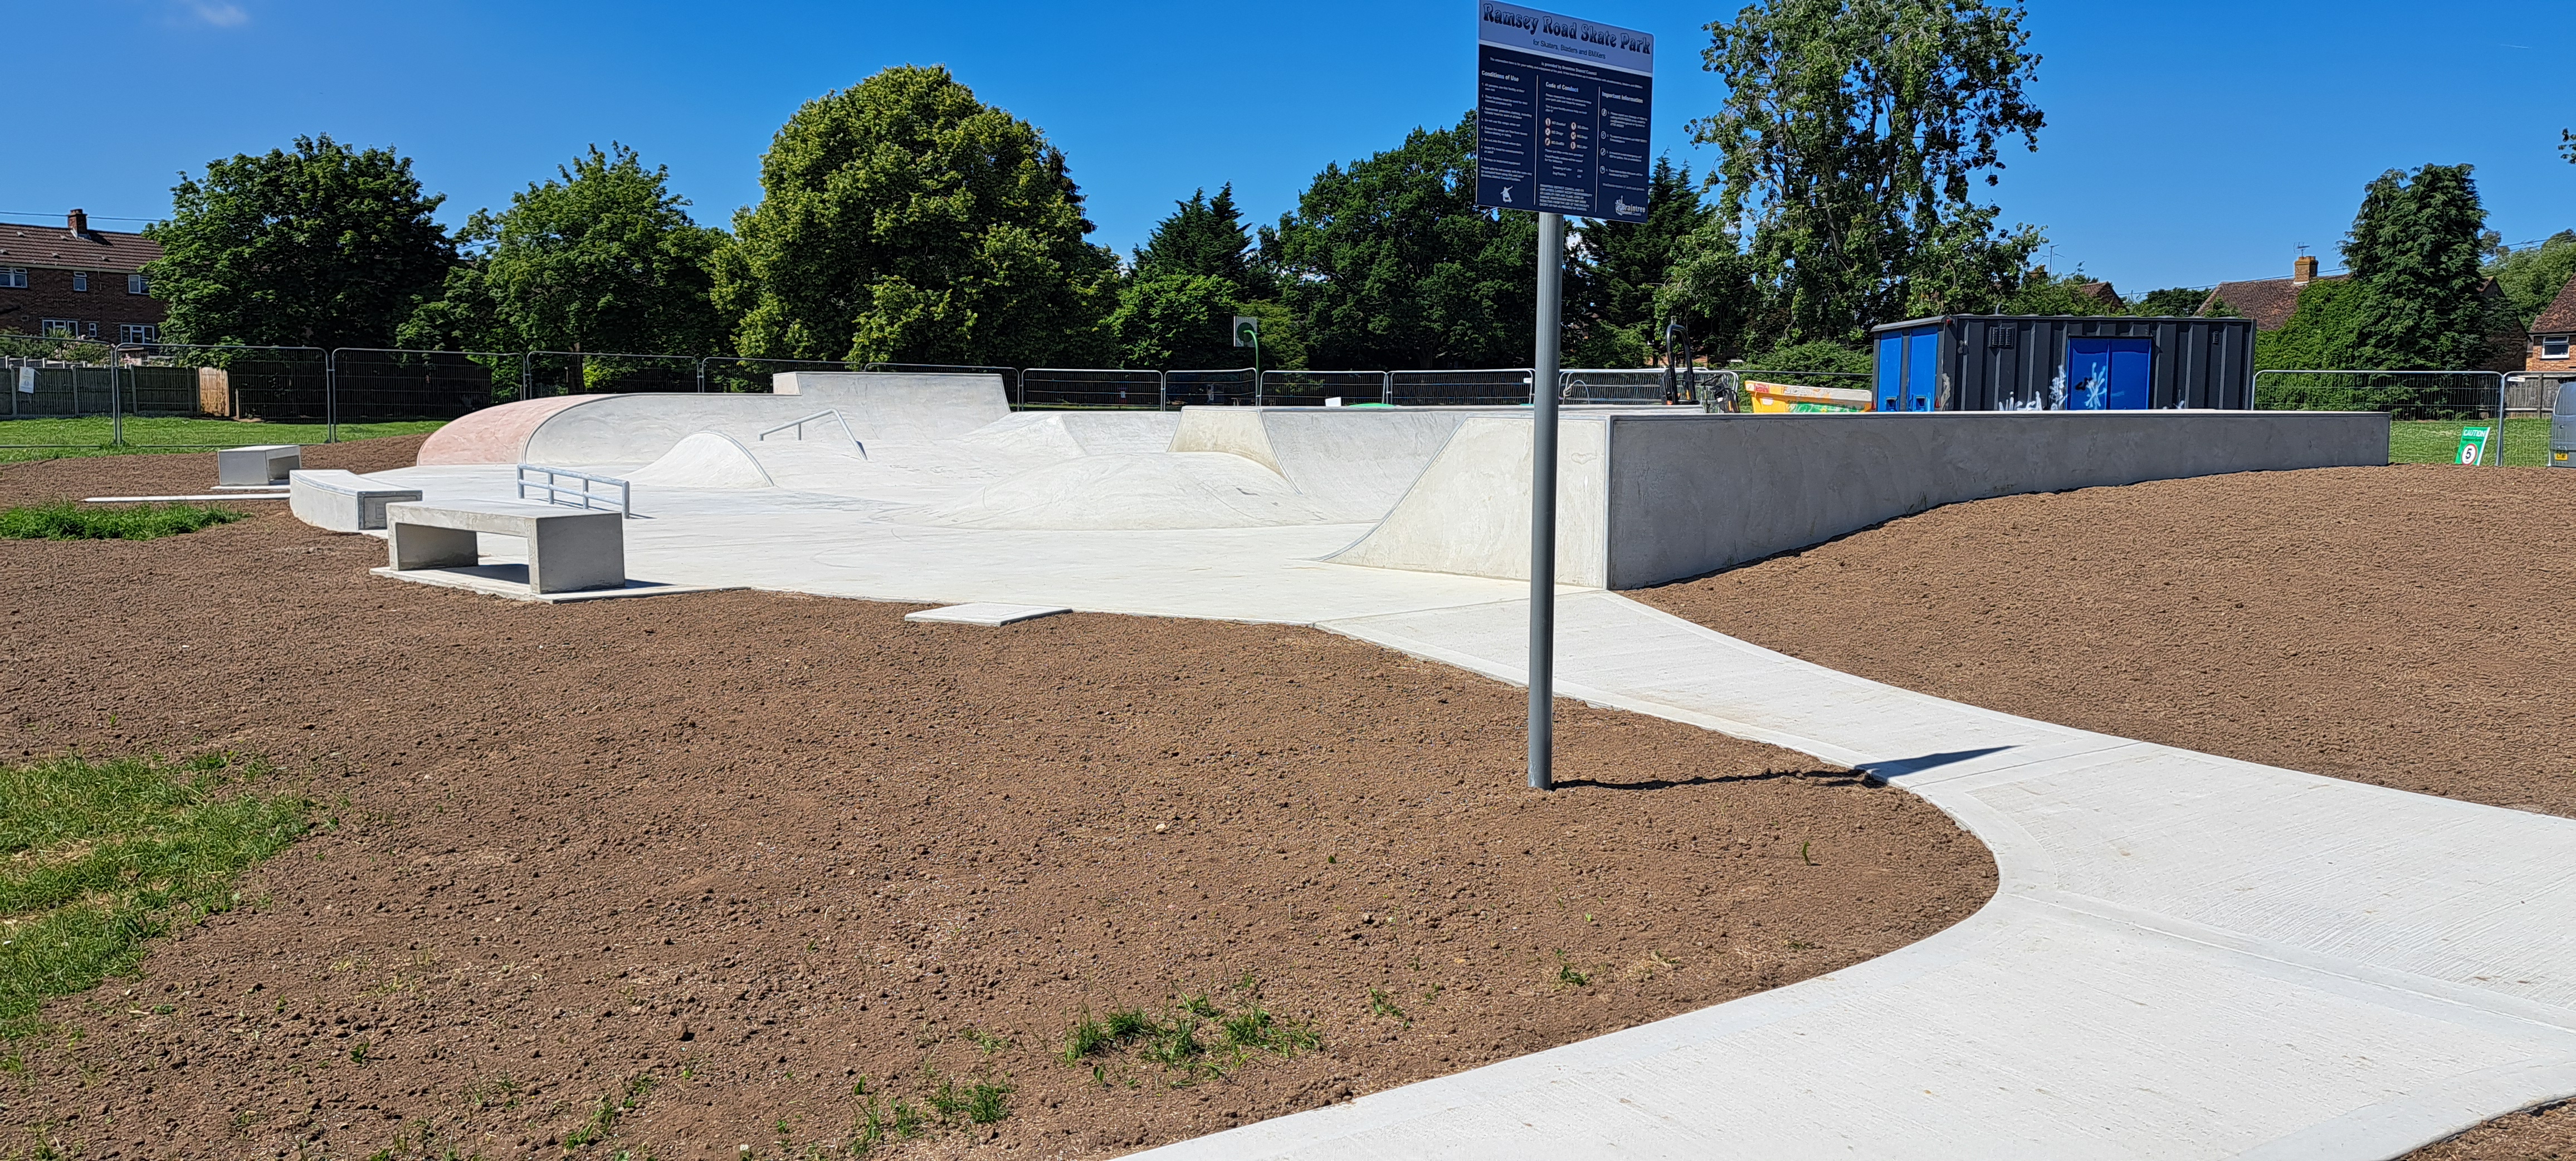 Image of Ramsey Road skatepark complete